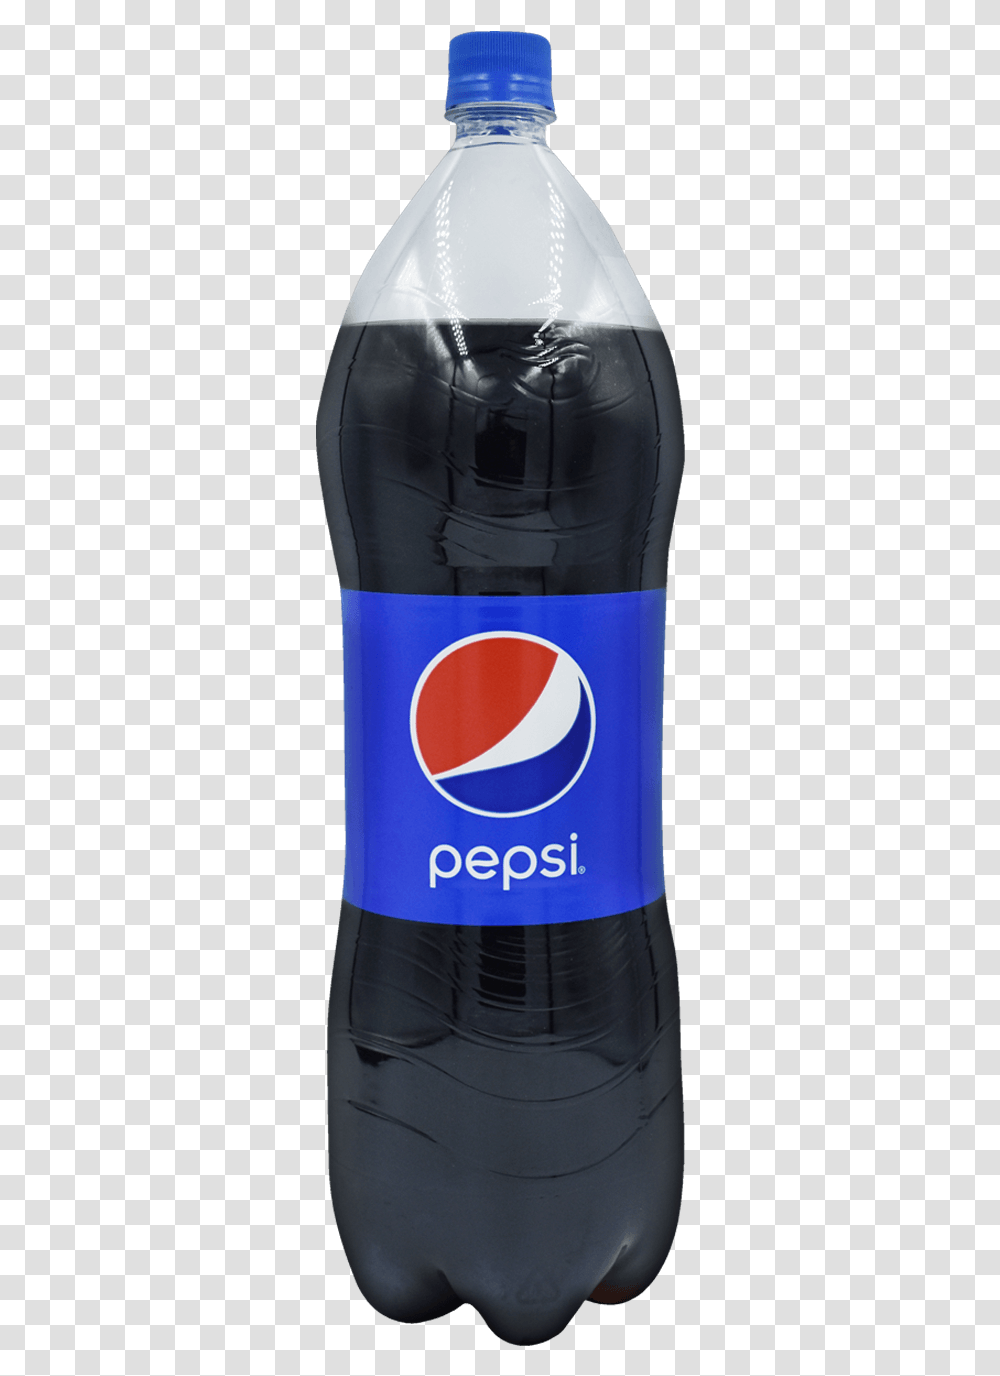 Pepsi Pet Bottle, Soda, Beverage, Drink, Helmet Transparent Png